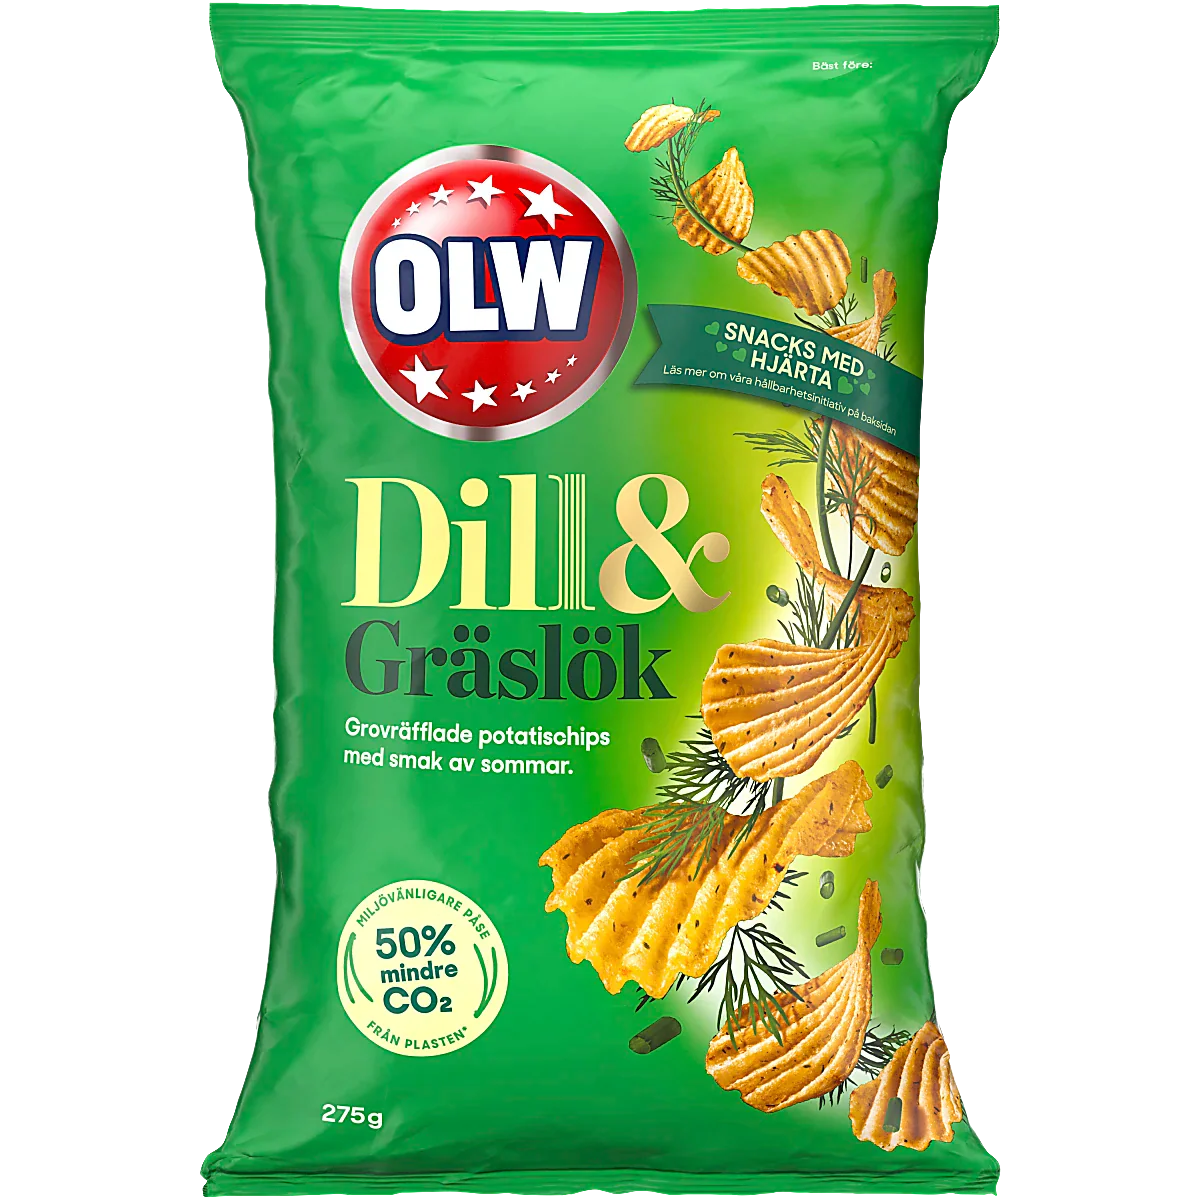 OLW Chips de eneldo y cebollino by Swedish Candy Store